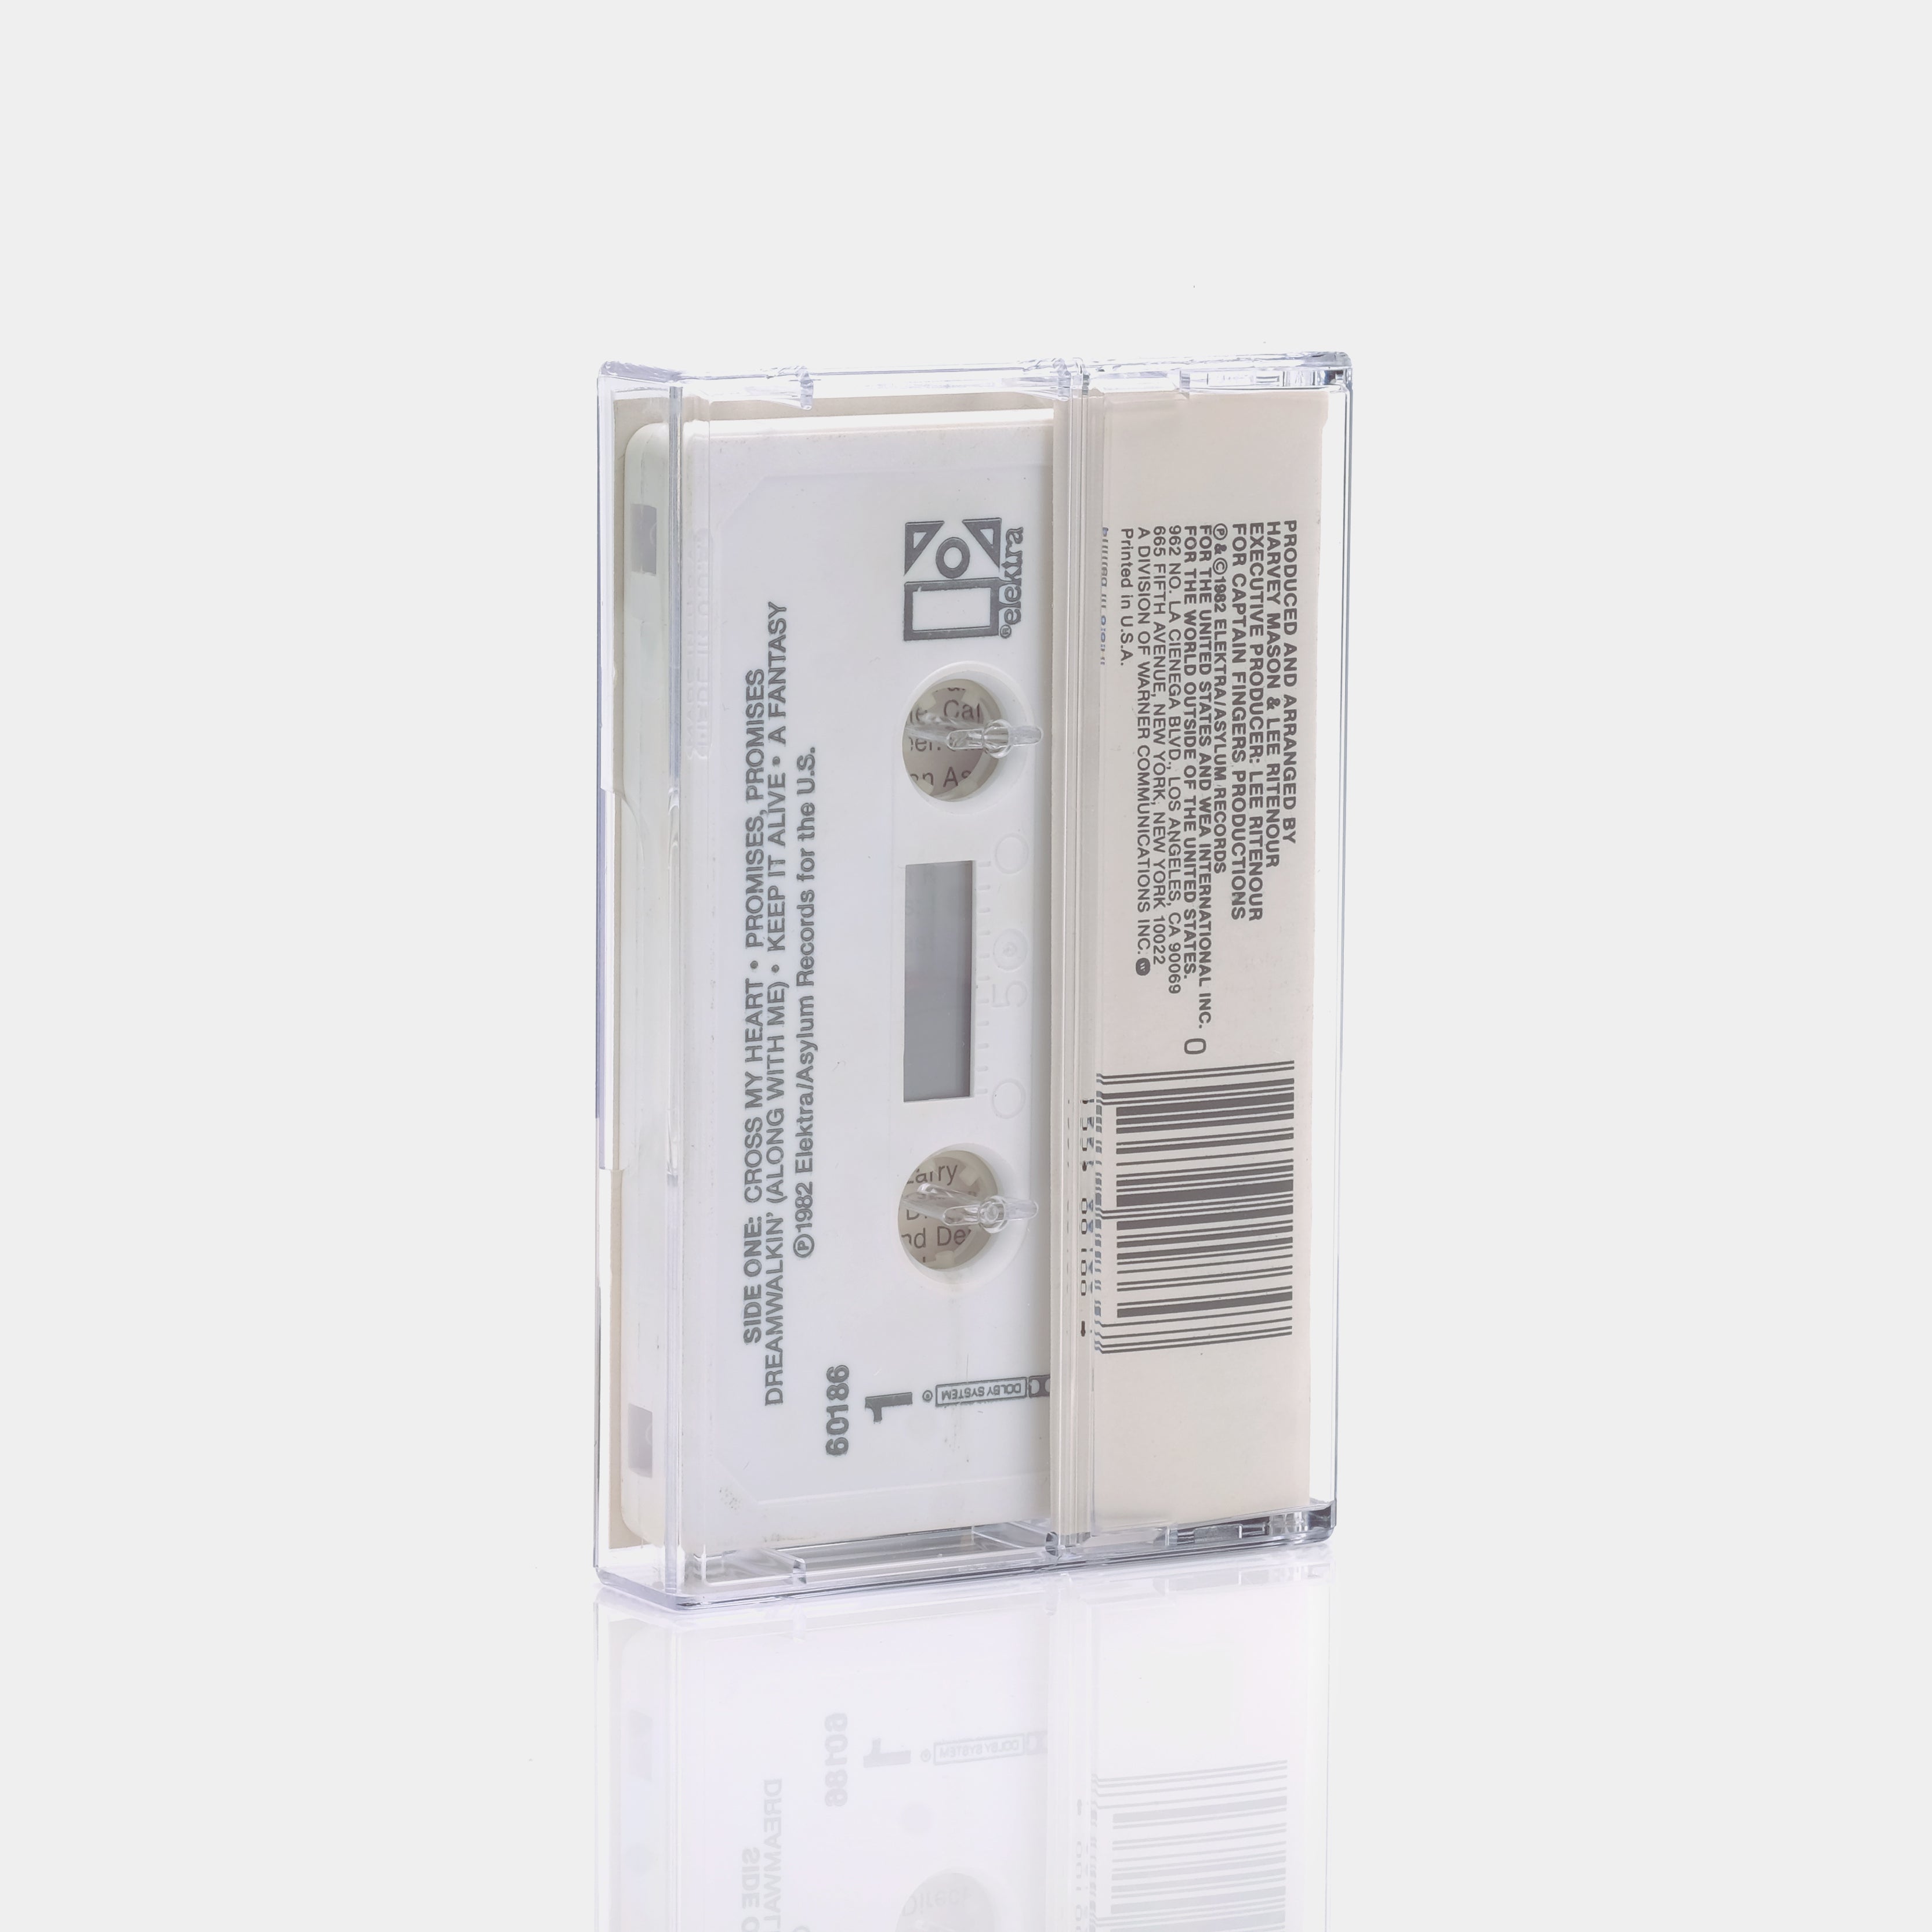 Lee Ritenour - RIT/2 Cassette Tape